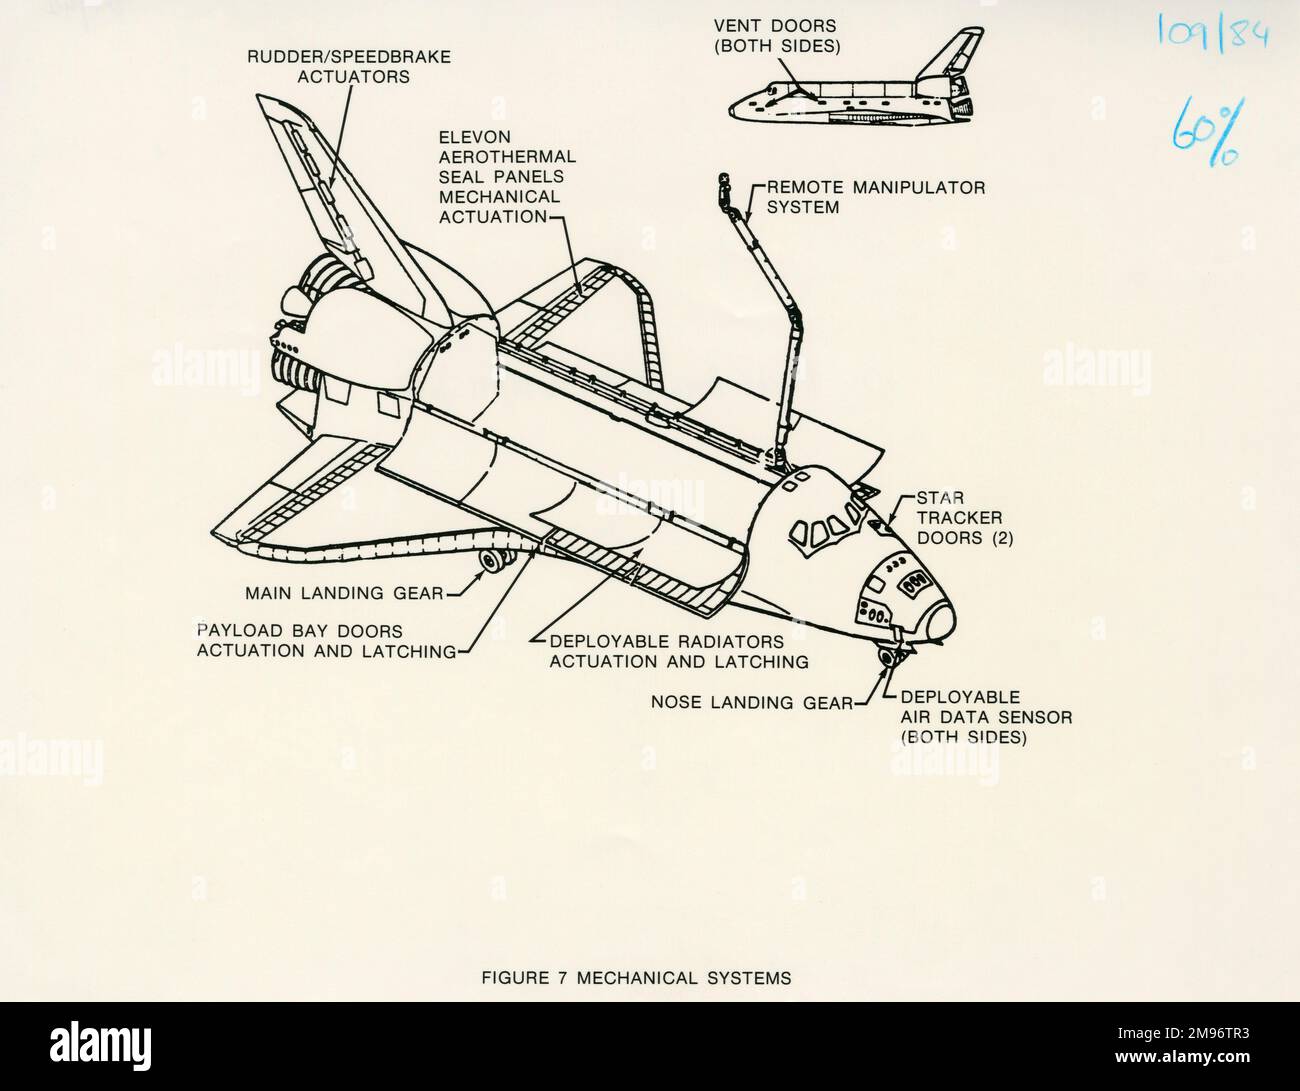 Schema dei sistemi meccanici dell'Orbiter Space Shuttle Foto Stock